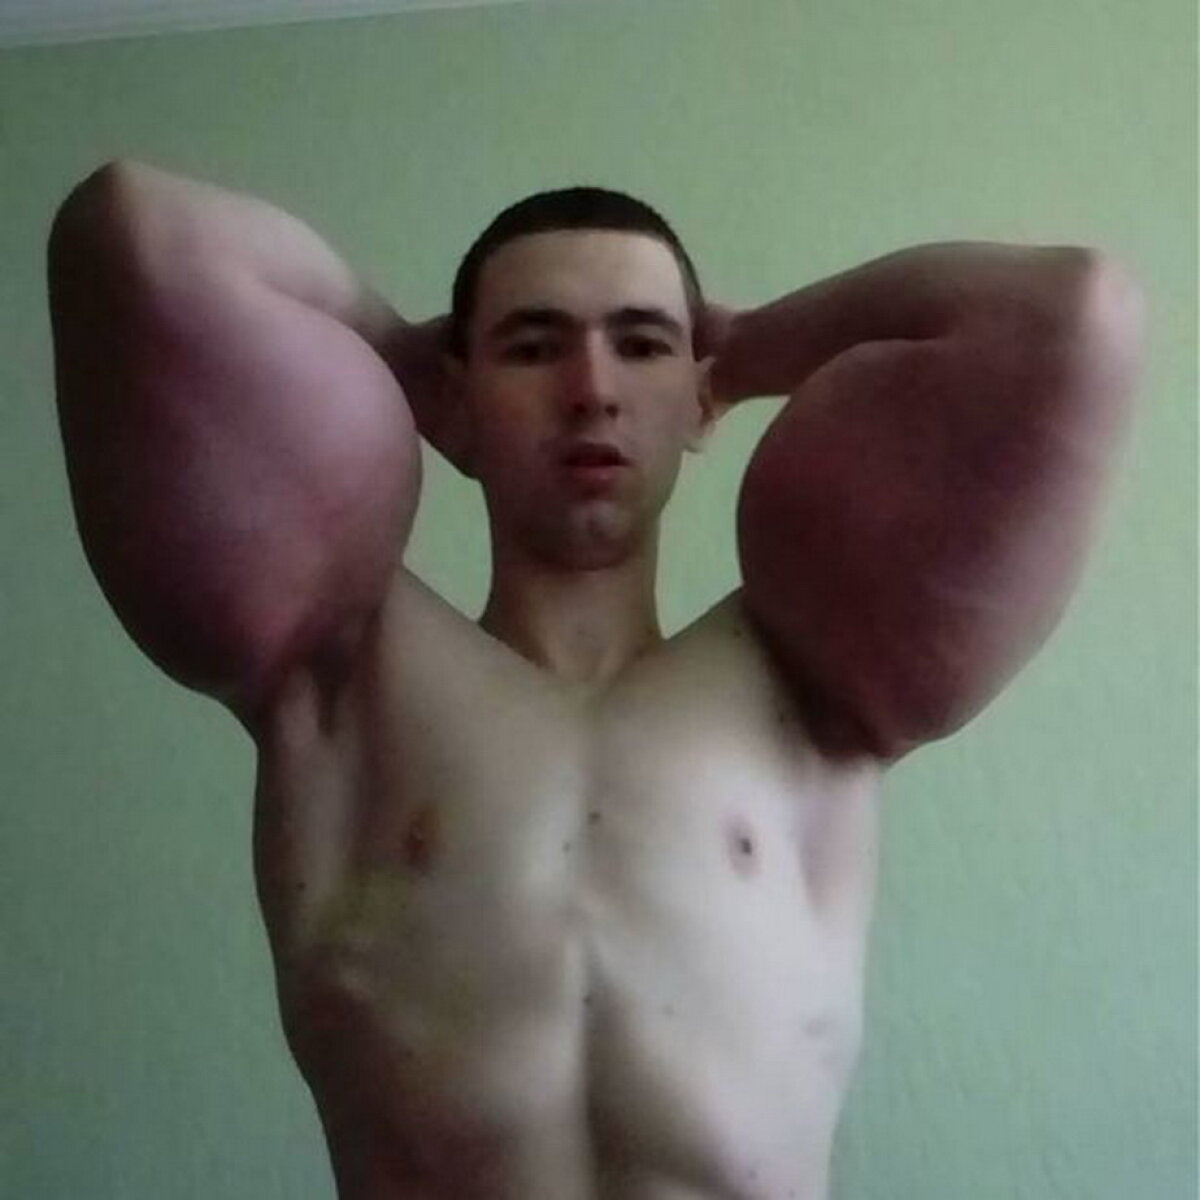 Imagini horror! Iată ce a pățit un rus care a vrut să aibă mușchi peste noapte!